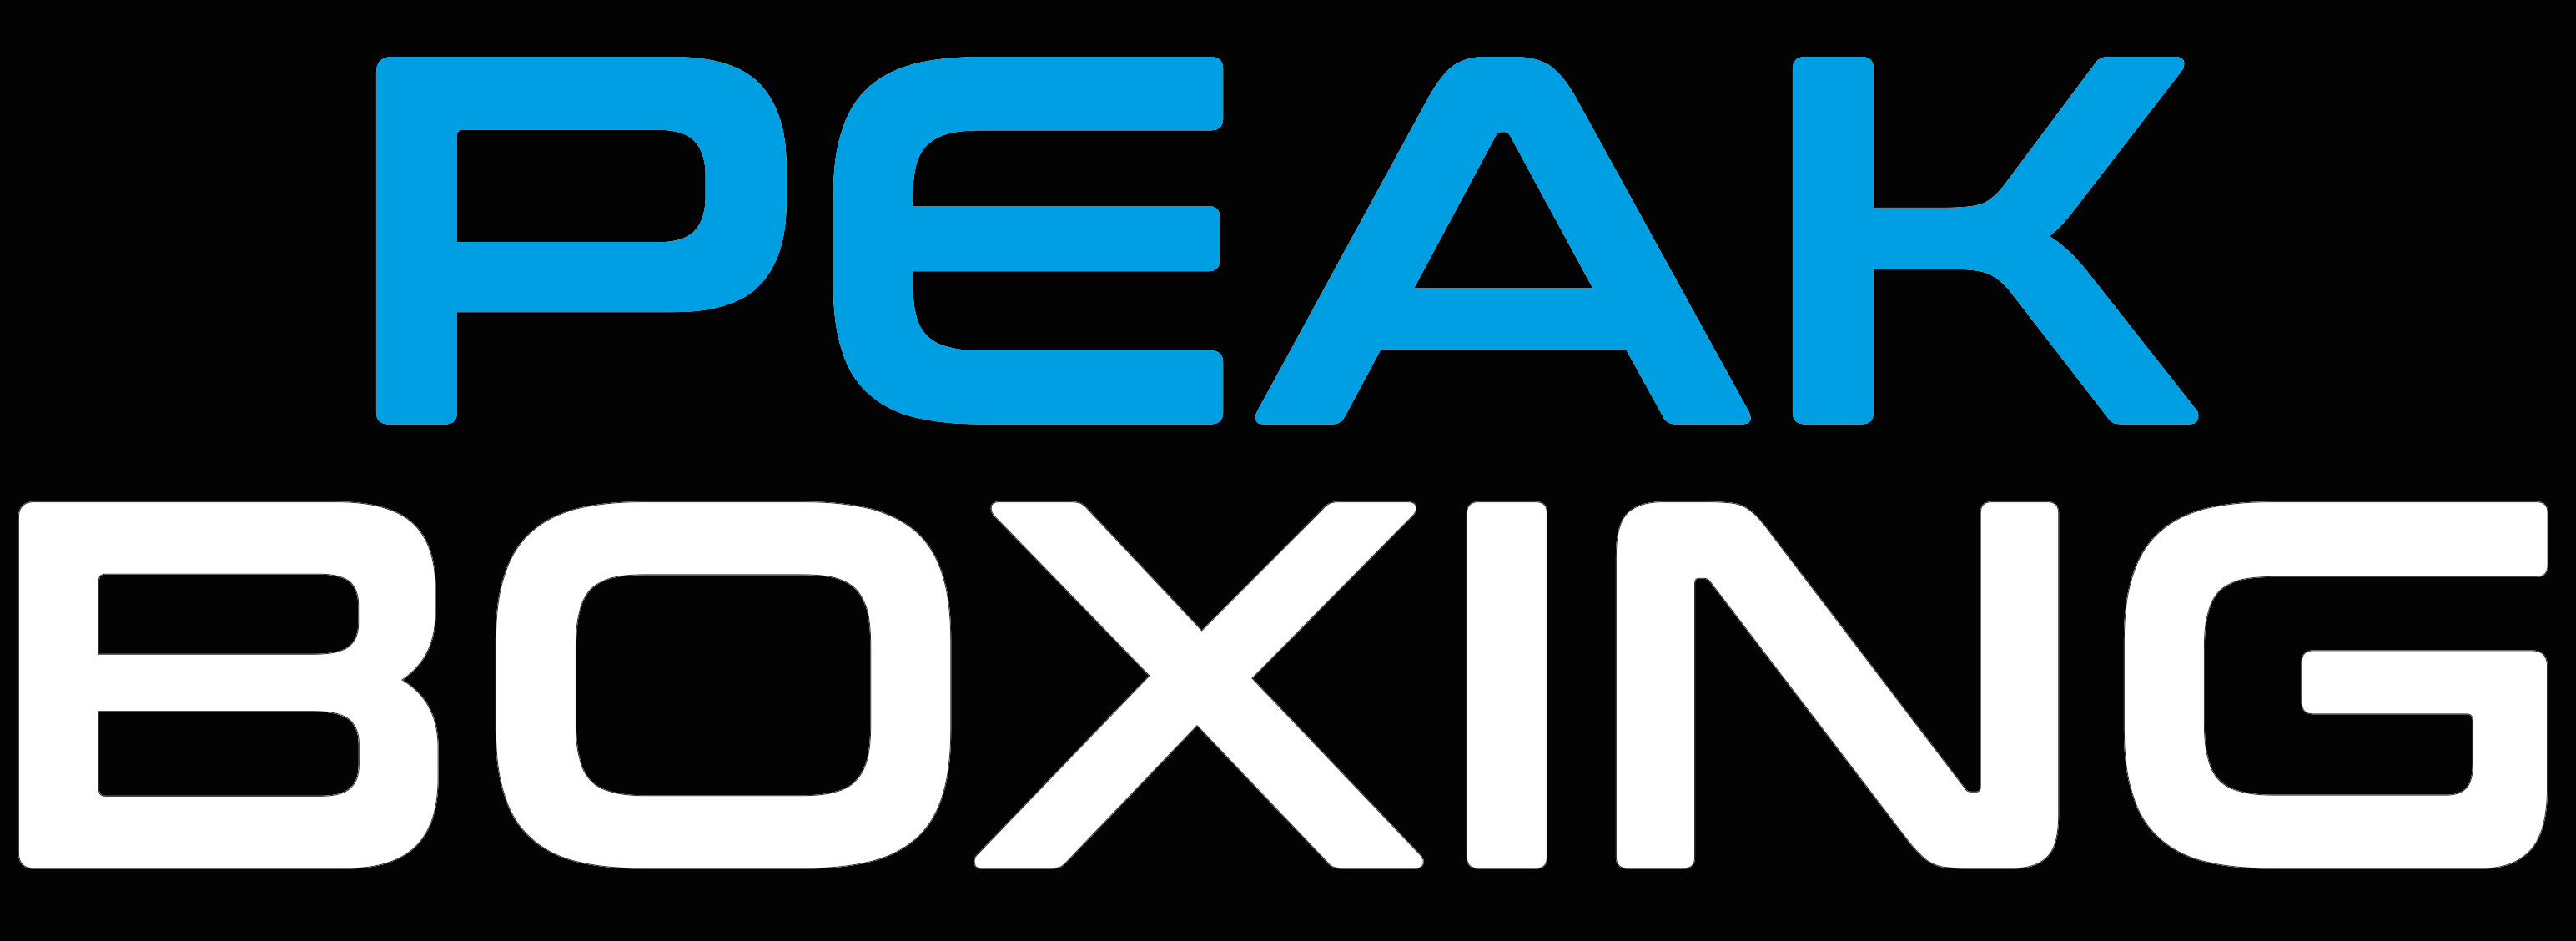 Peak Boxing logo